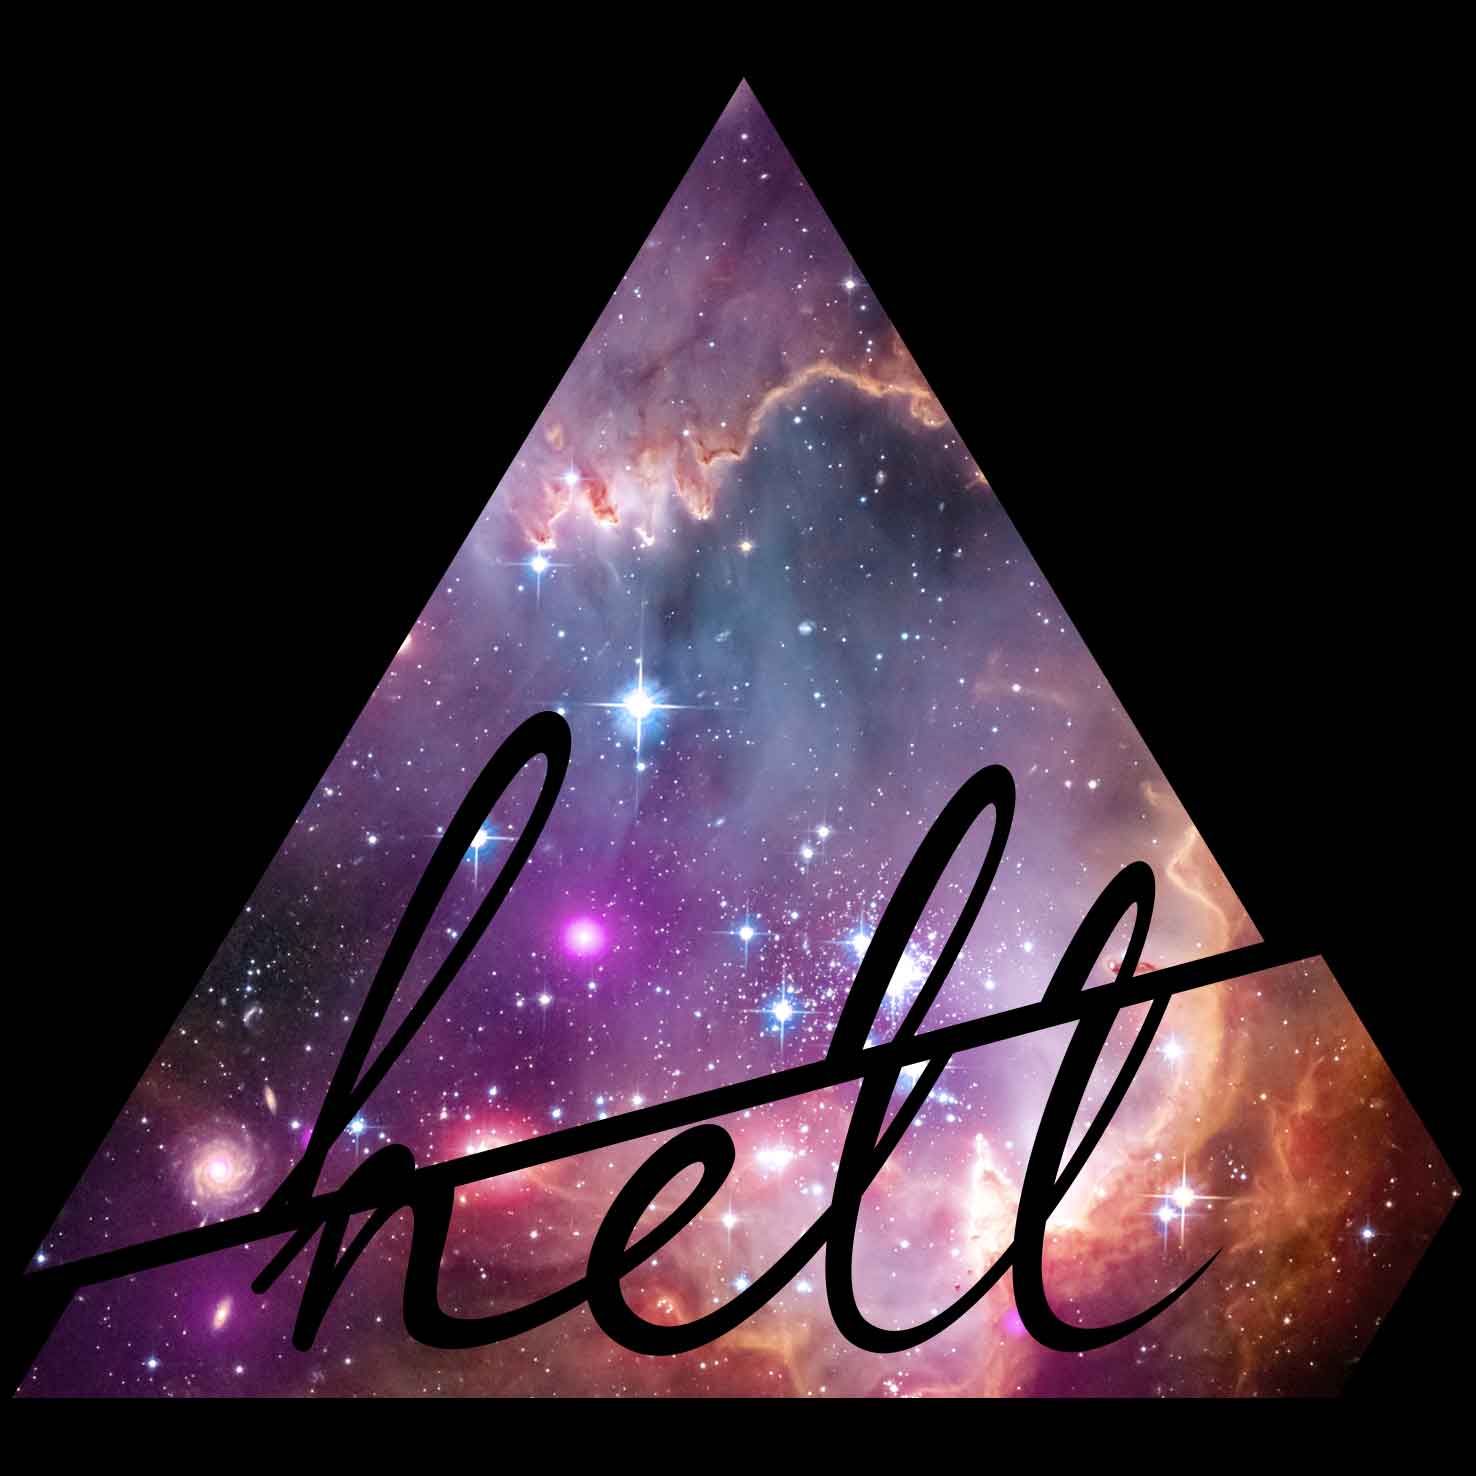 hell_nebula_b